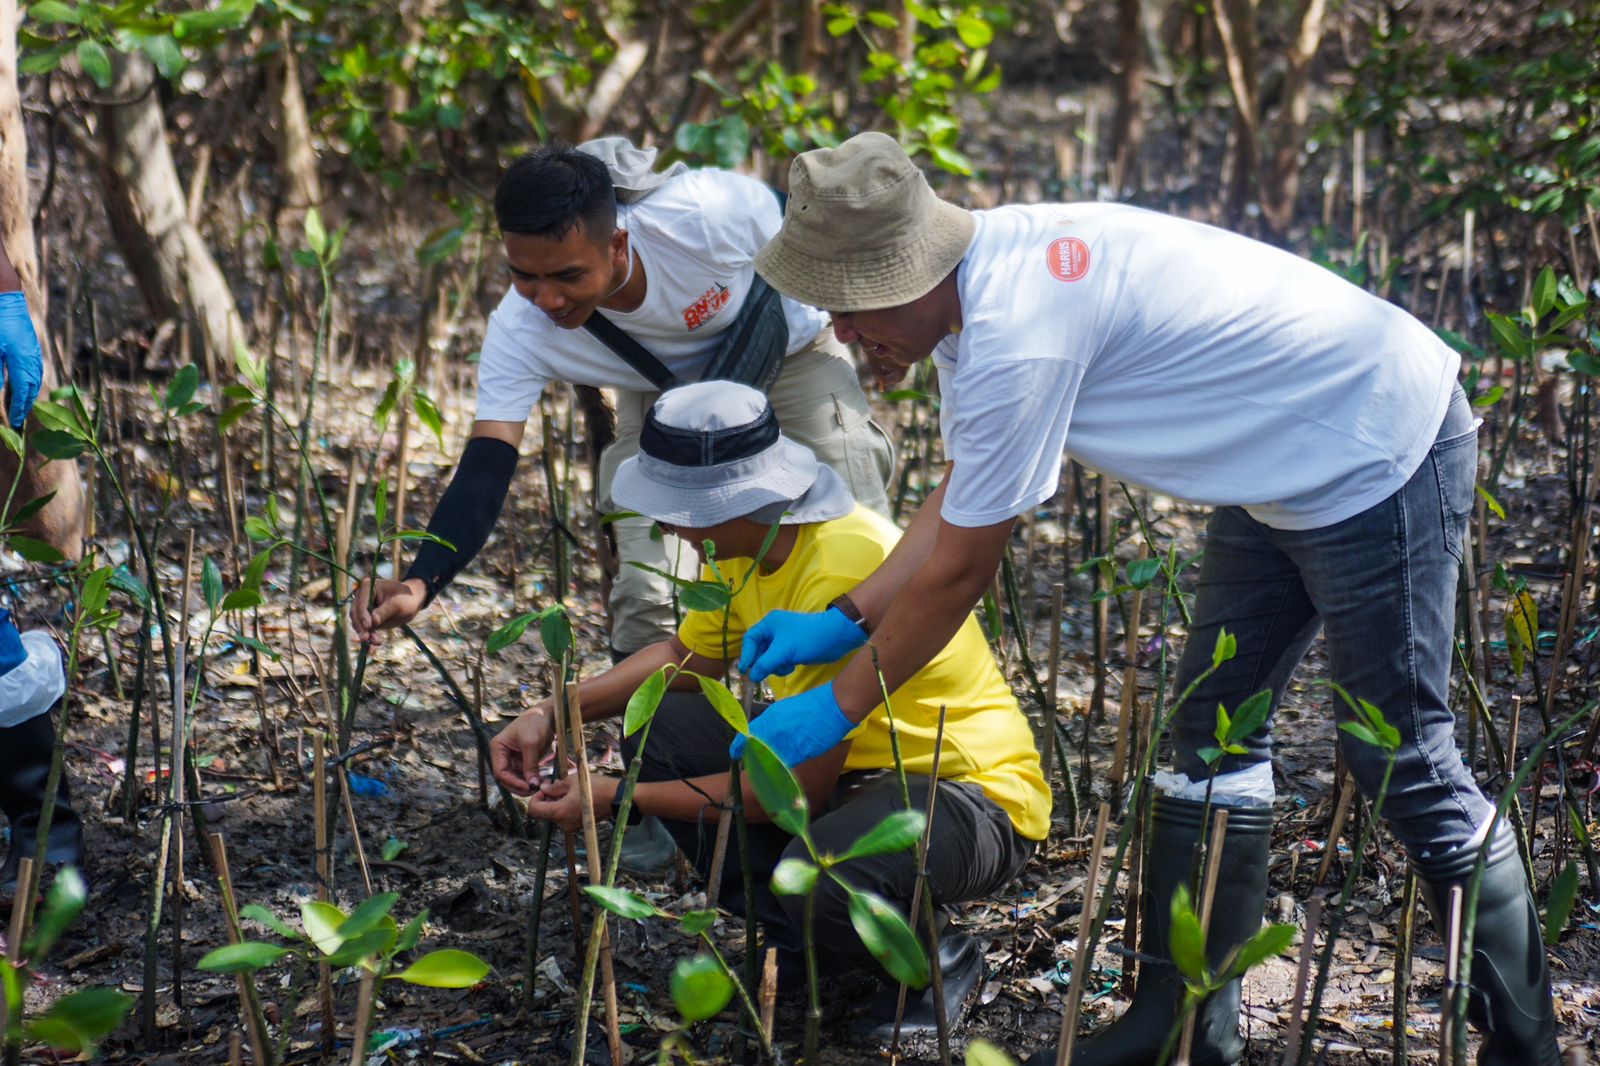 Dukung Sustainability, Ascott East Java Tanam Seribu Pohon Mangrove di Pesisir Wonorejo